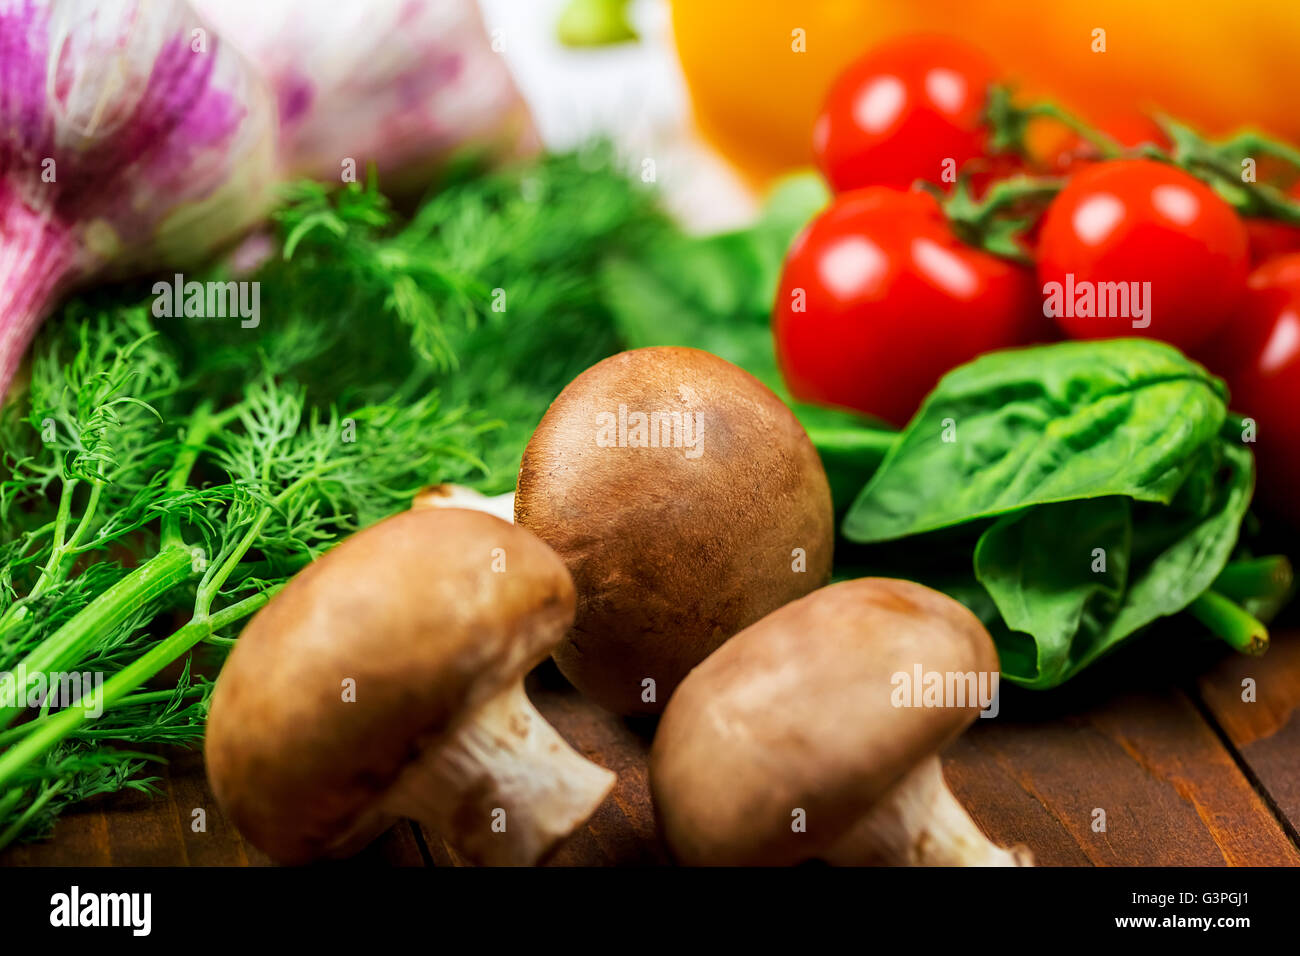 Bellissimo sfondo organico sano mangiare. studio fotografico di diverse verdure e funghi sulle vecchie schede marrone Foto Stock